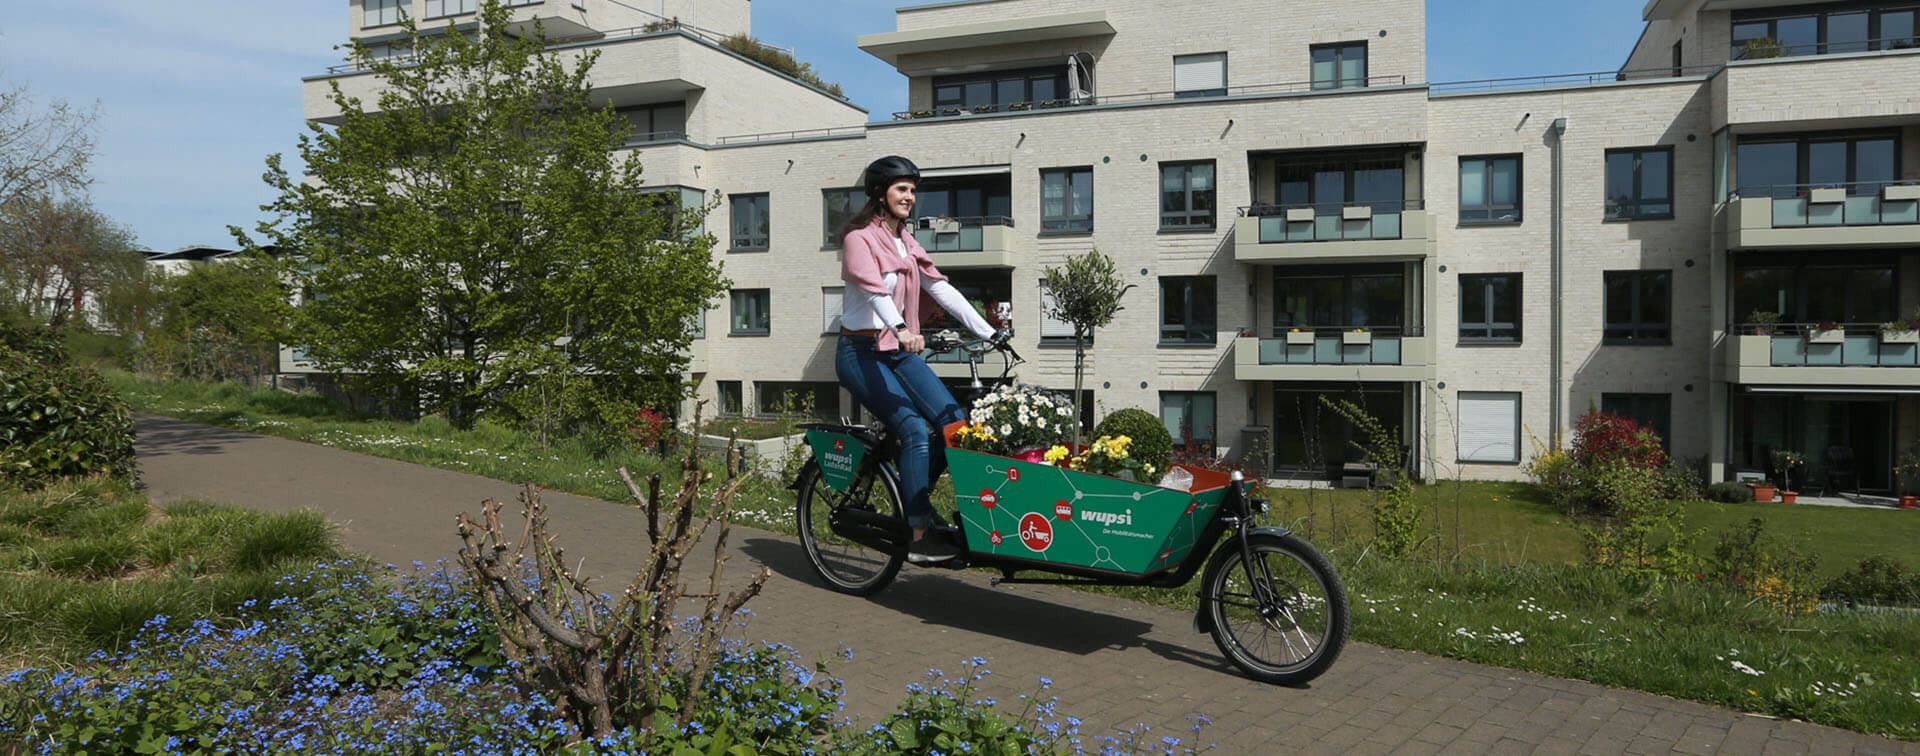 Eine Frau fährt glücklich mit ihrem Wupsilastenrad, in dem sie Blumen transportiert, durch eine Wohnsiedlung.